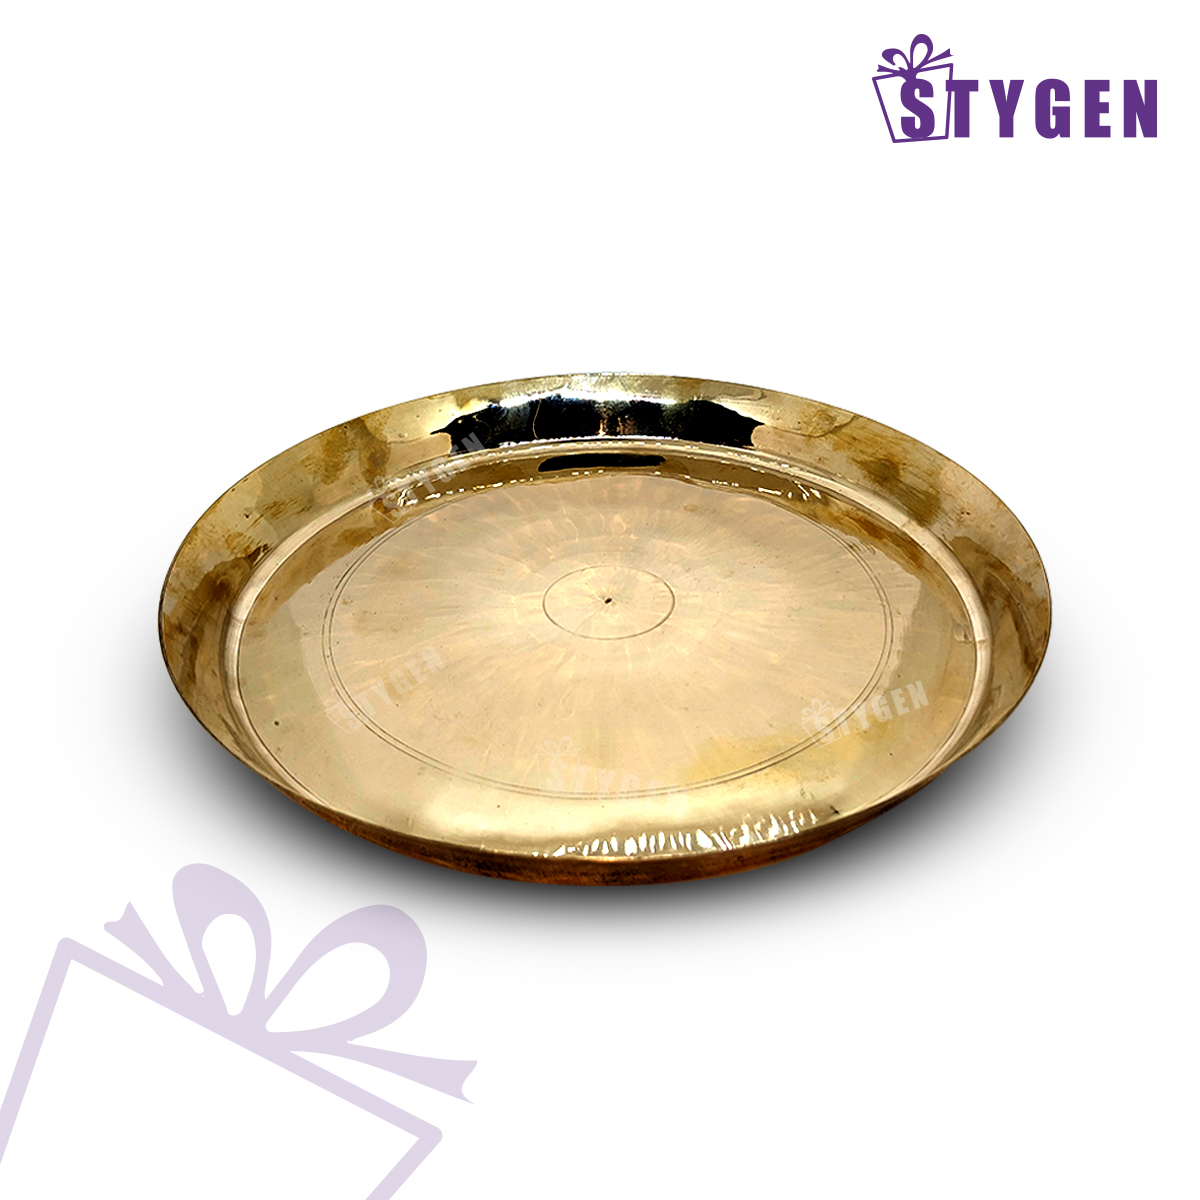 ইন্ডিয়ান কাসার প্লেট  - Indian Kasa Plate -  Indian Bronze Made Plate